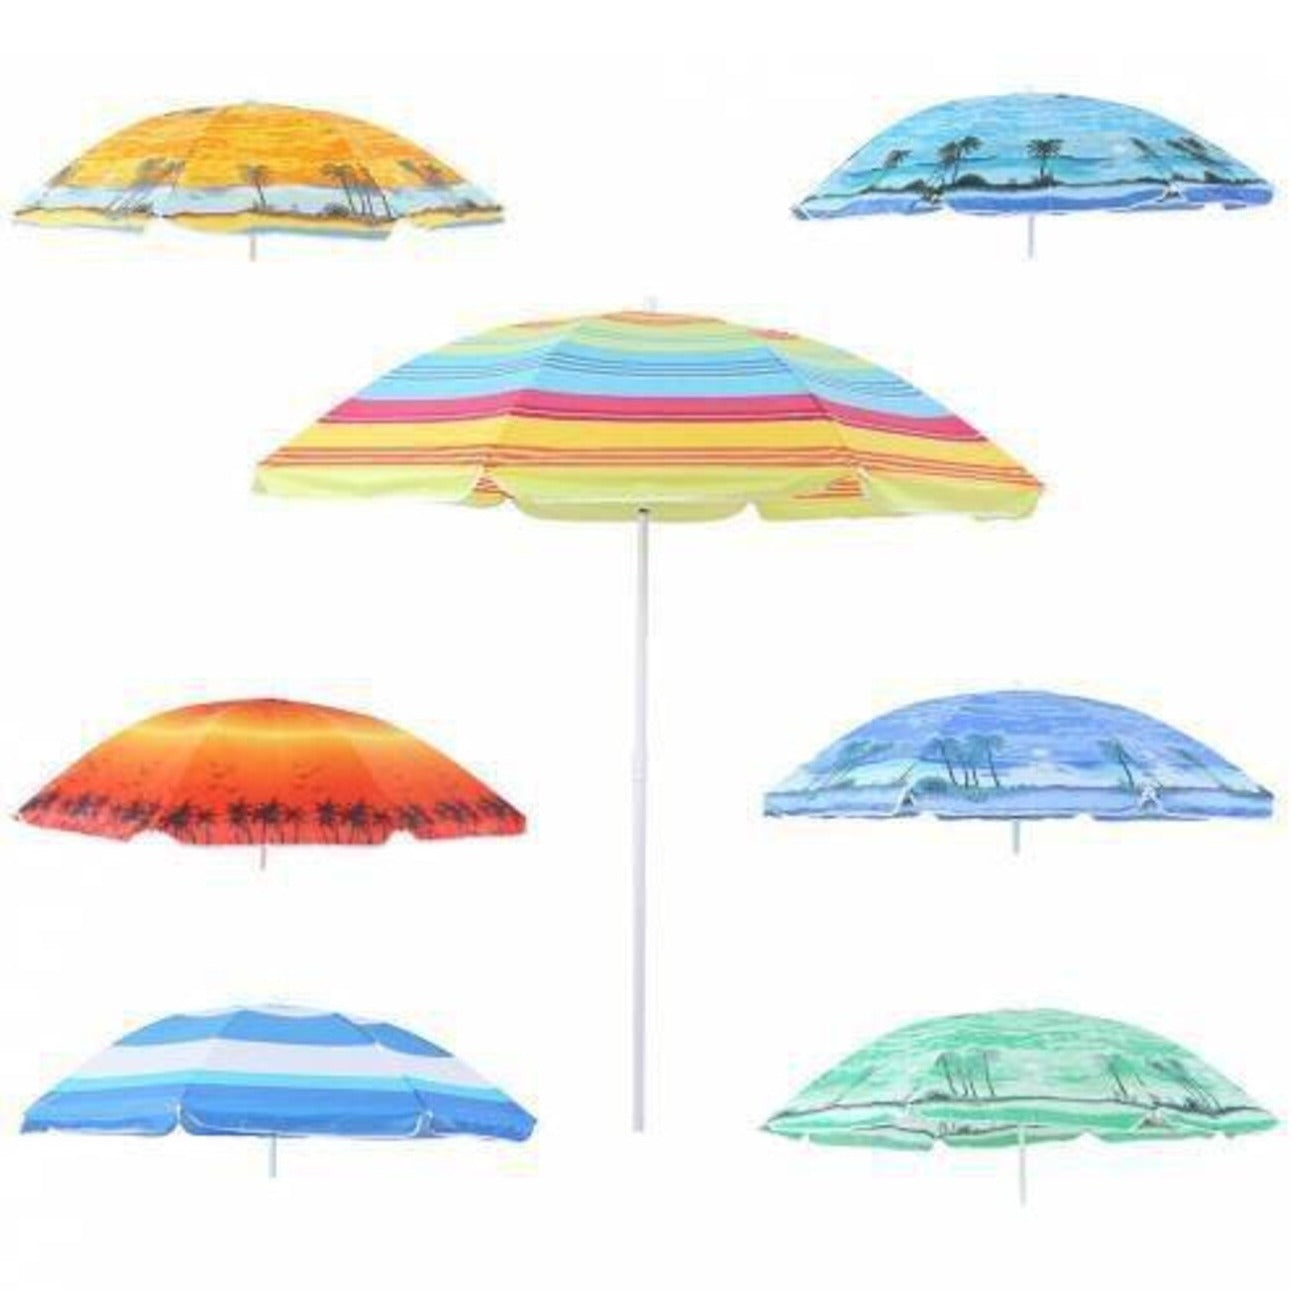 Kerti napernyő 180cm, színes strandernyő